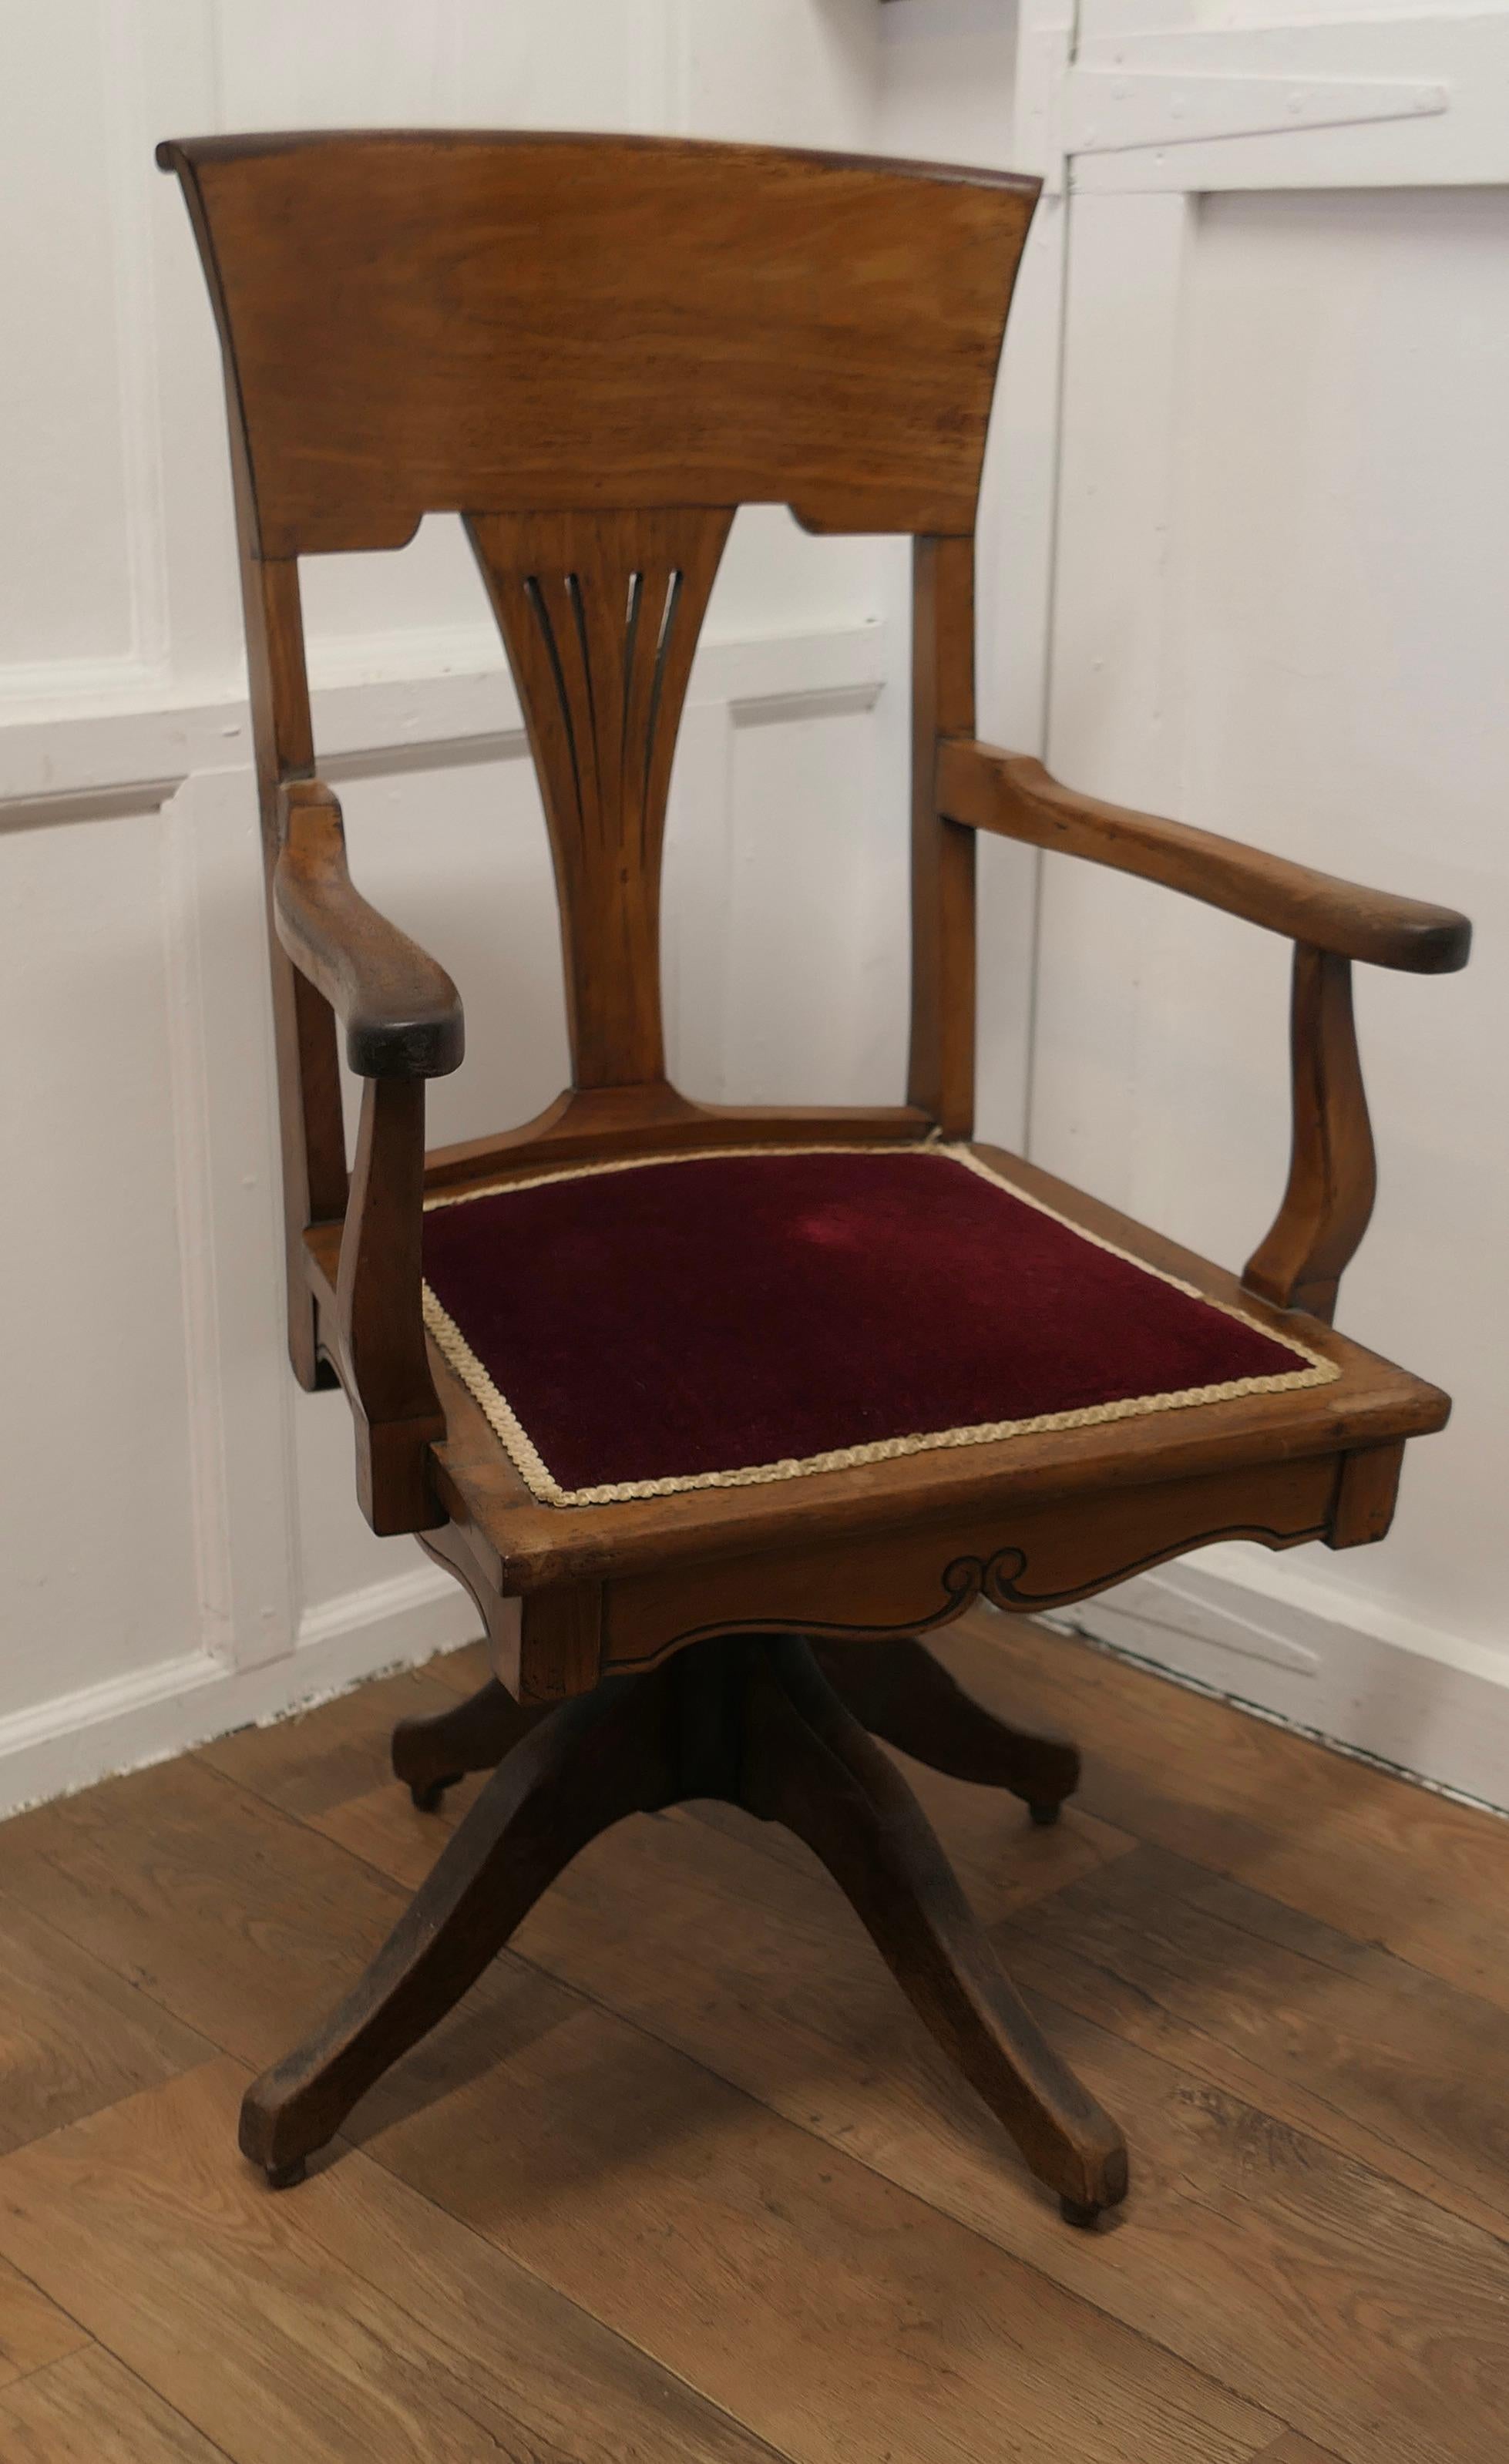 Chaise de bureau en noyer de style Arts and Crafts de l'époque édouardienne  

La chaise est dotée d'un dossier haut et incurvé, d'un dosseret percé en forme d'éventail et d'une large traverse supérieure incurvée. L'assise est recouverte d'un